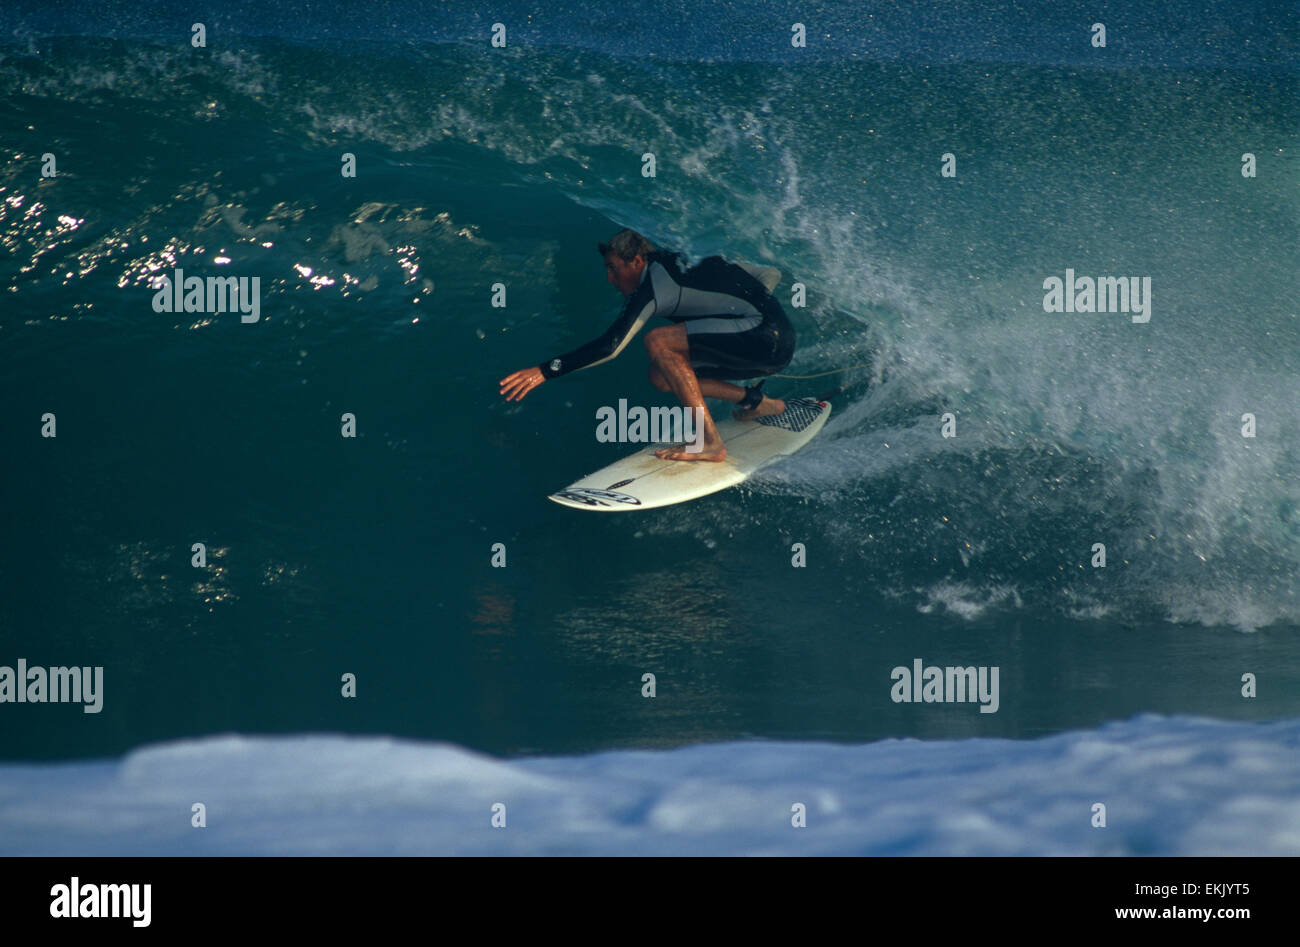 Il Surfer si infila in un tubo di cavalcare un onda cava. La navigazione è  la spiaggia più popolare sport. La Francia diventa una mecca per il surf in  estate Foto stock -